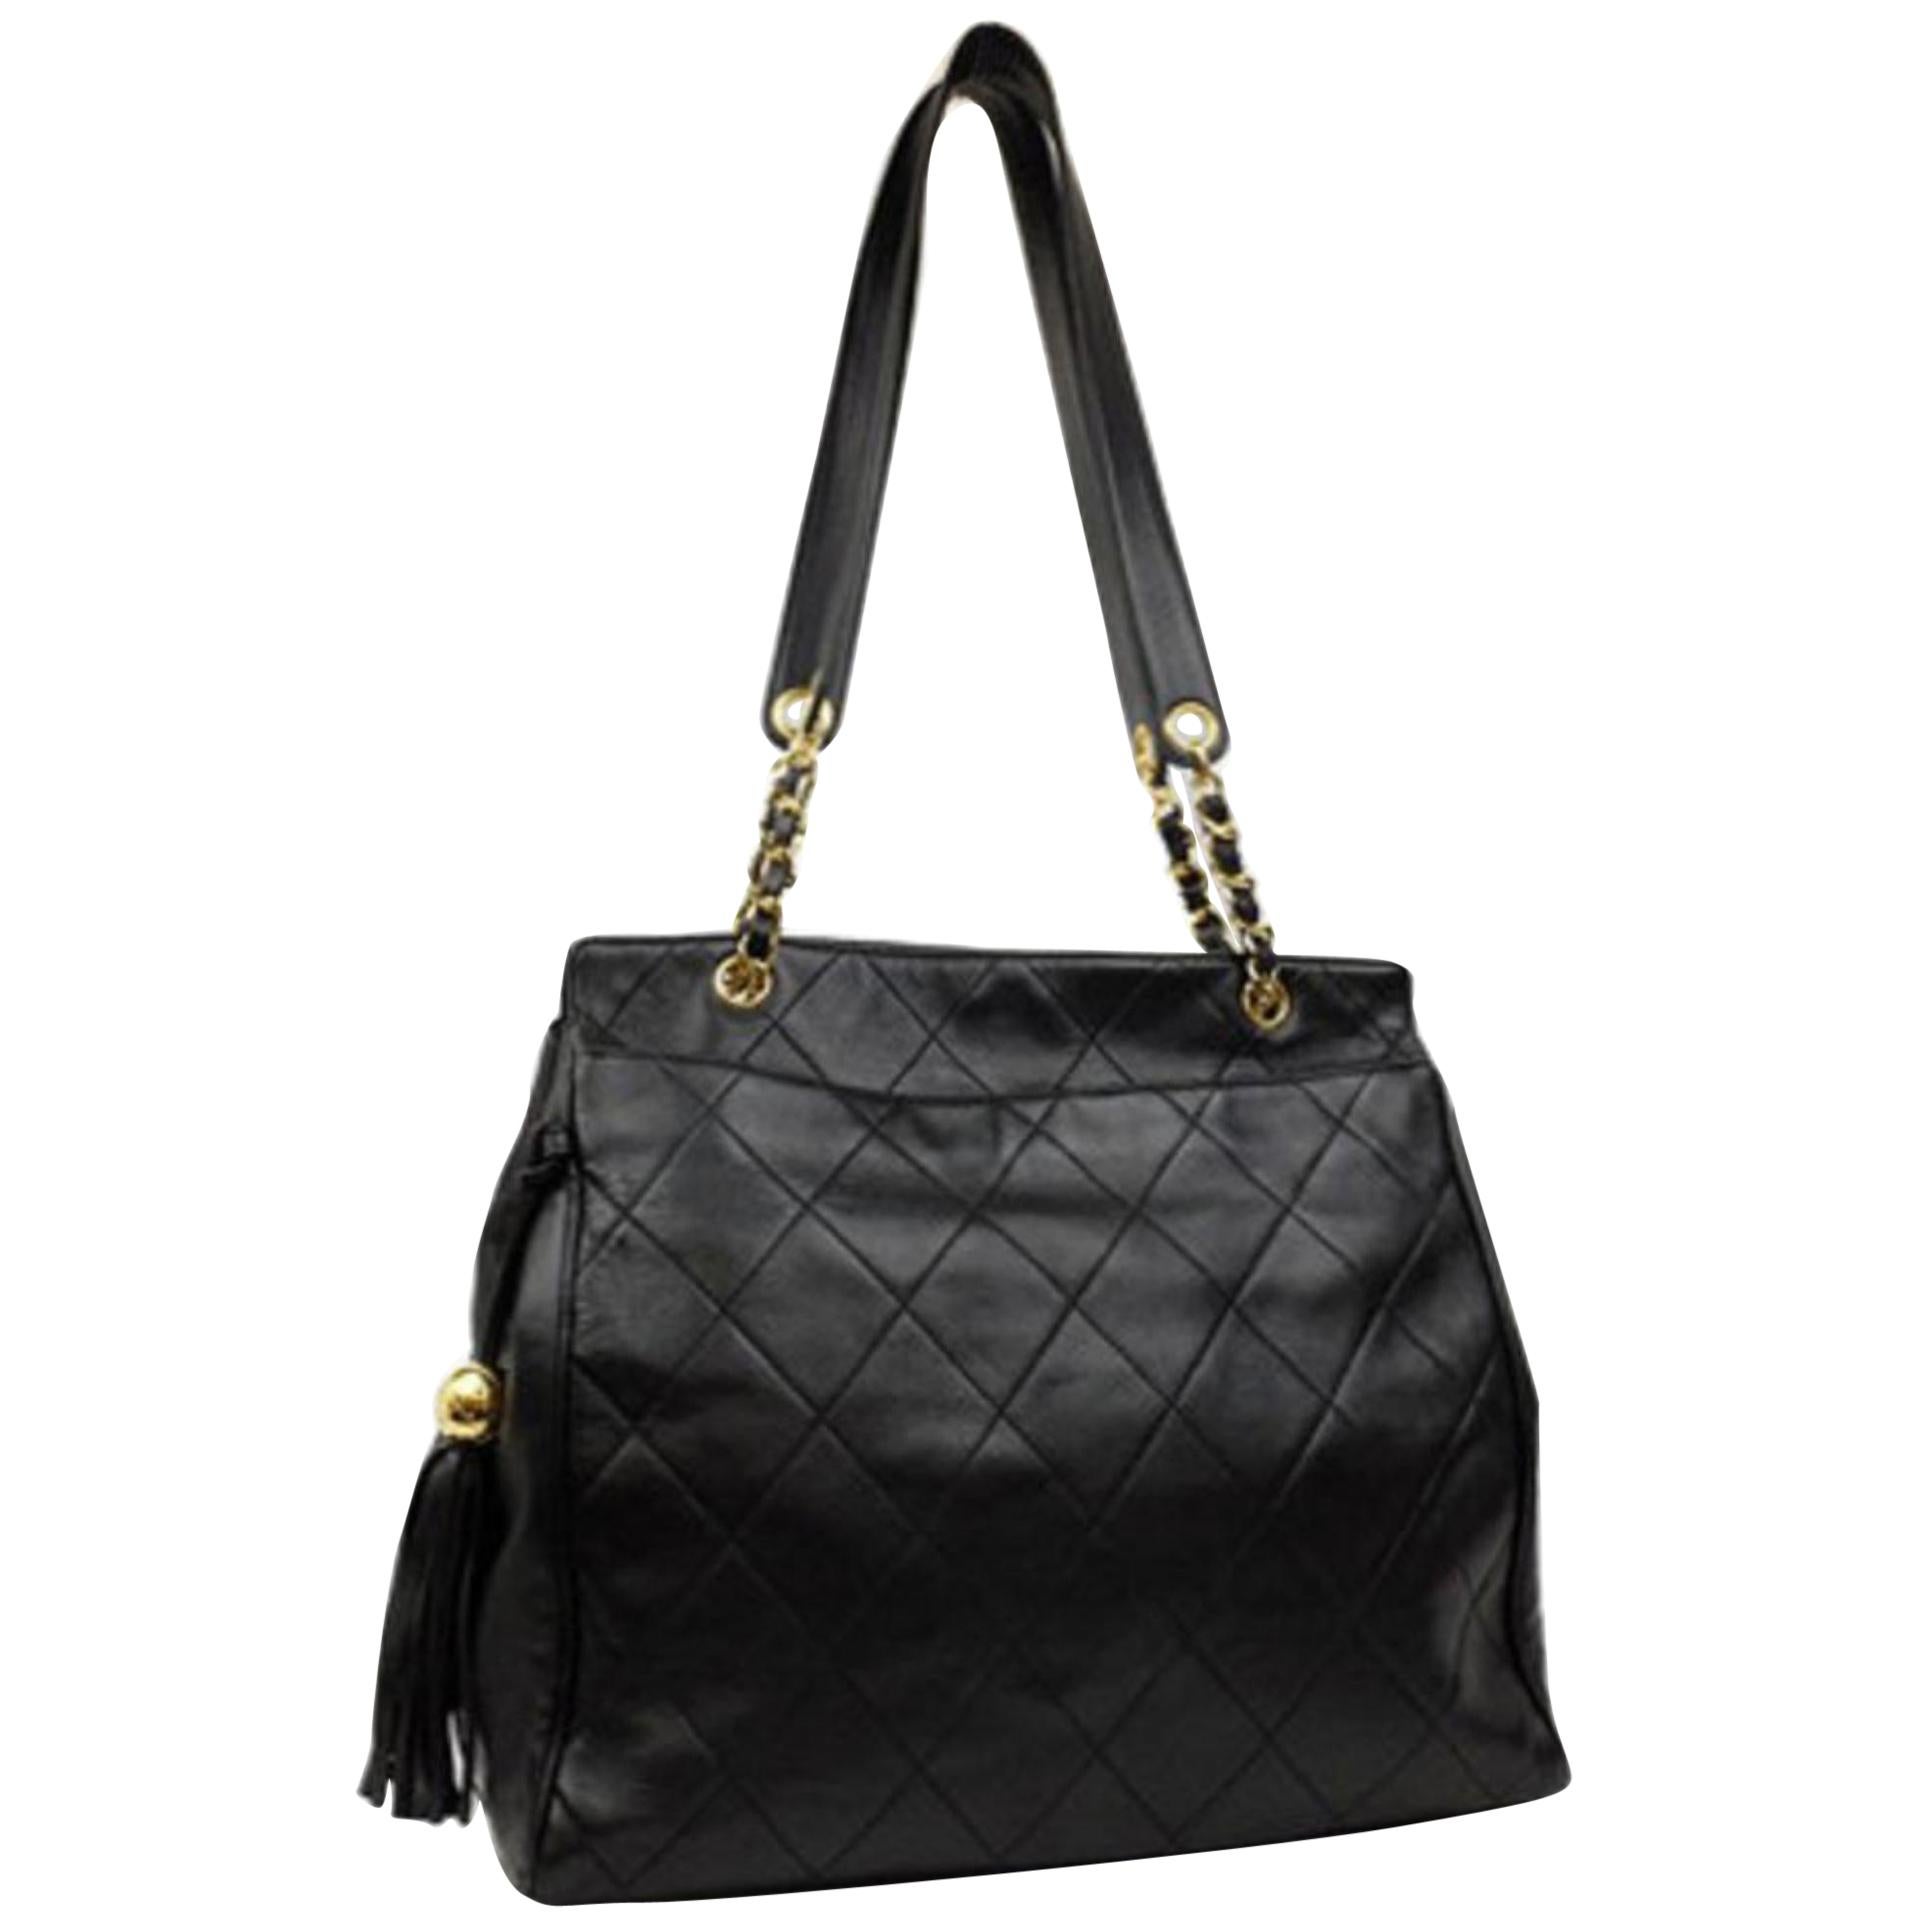 Chanel Quilted Lambskin Fringe Tassle Tote 221807 Black Leather Shoulder Bag For Sale